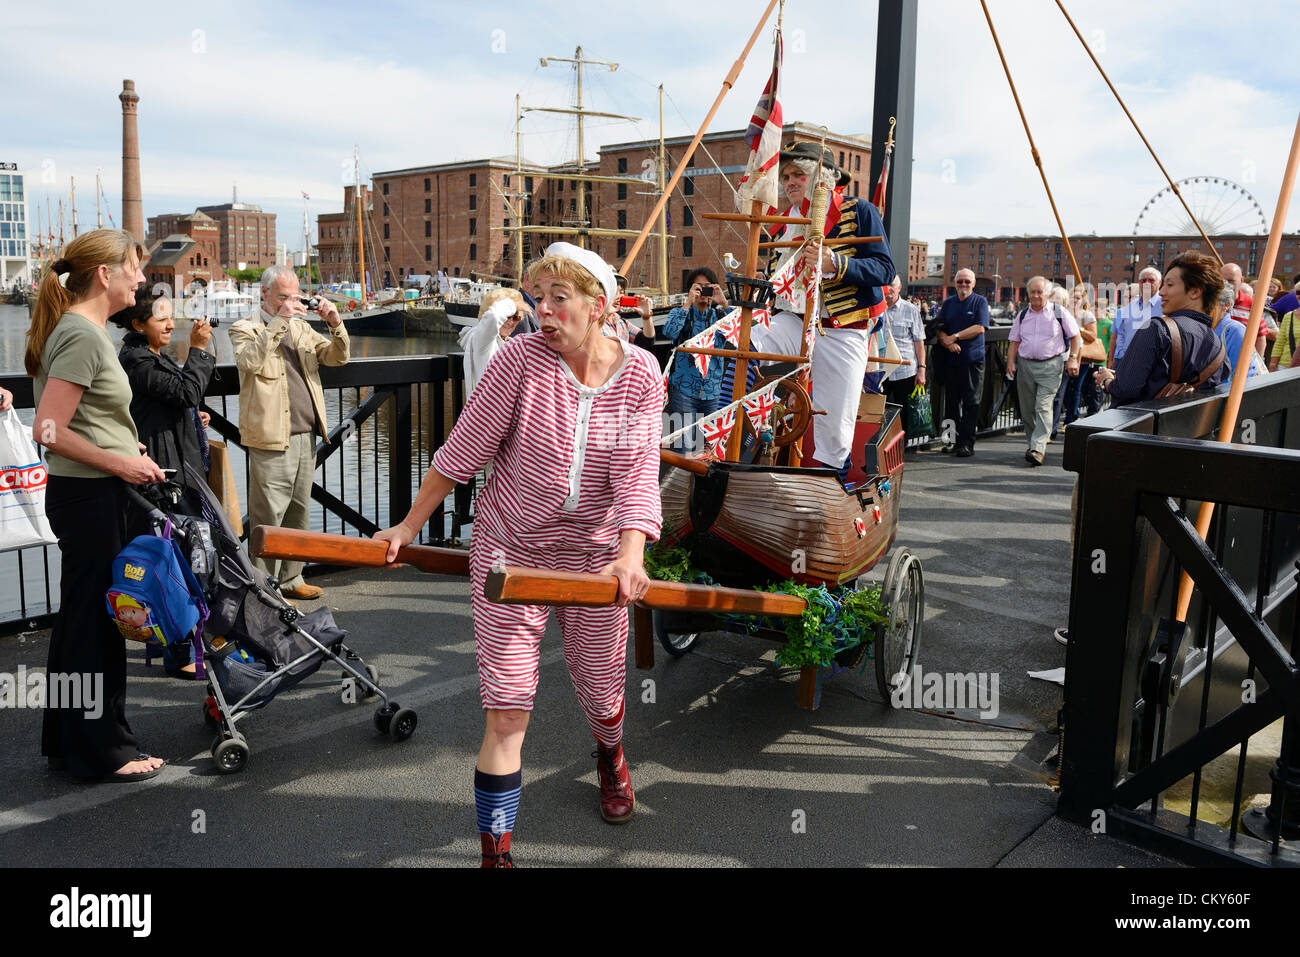 Samedi 1er septembre 2012. Liverpool, Royaume-Uni. La mer d'Irlande 2012 Tall Ships Regatta. Animations de rue à l'Albert Dock, Liverpool. Banque D'Images